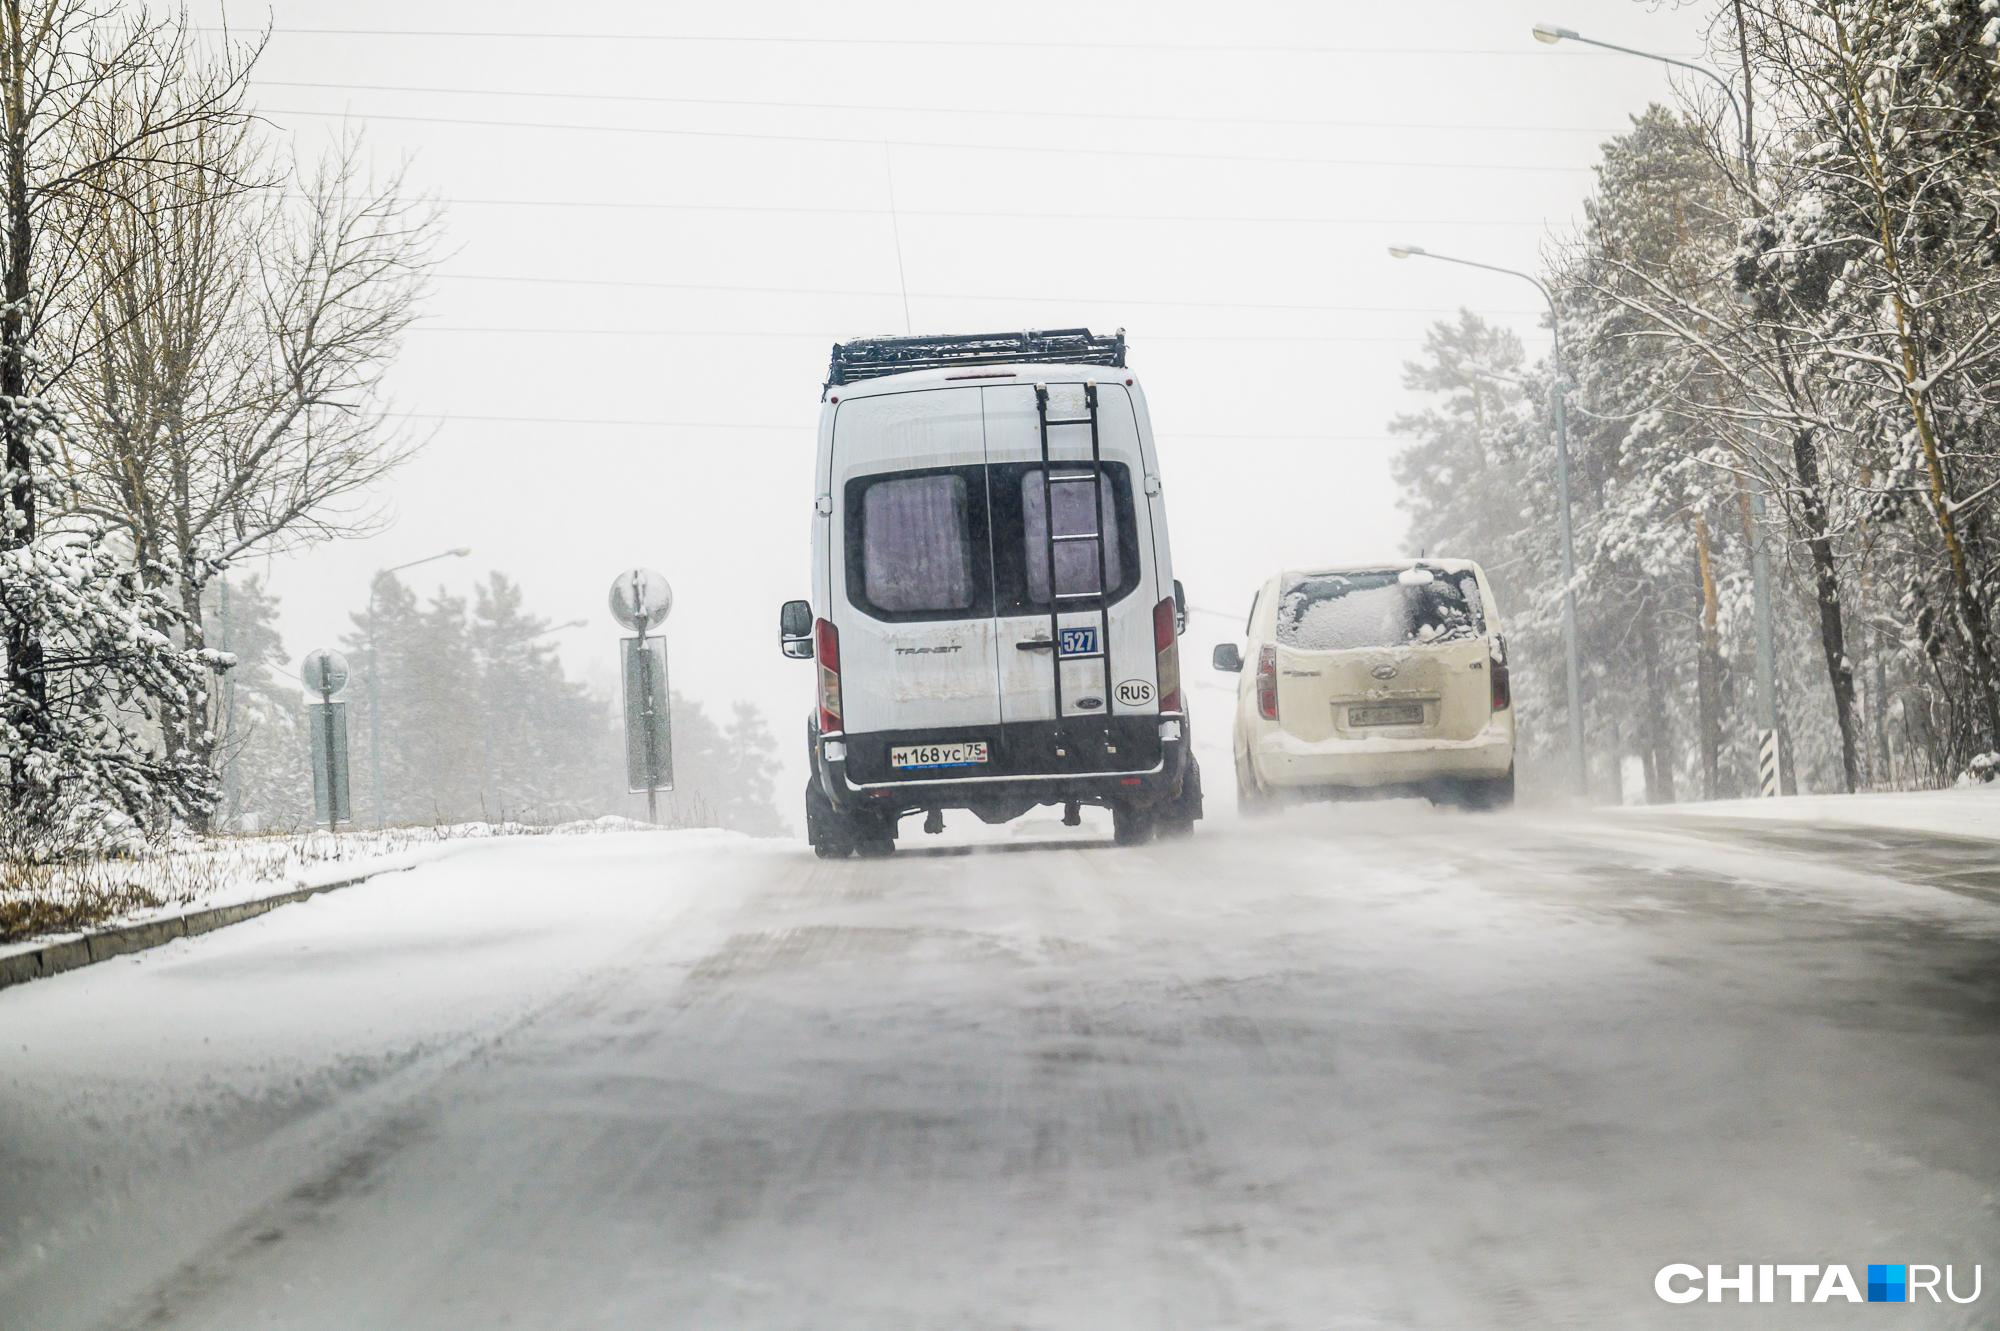 Перевозчик по маршруту № 120 в Читинском районе продолжит перевозить пассажиров, когда закончит ремонт